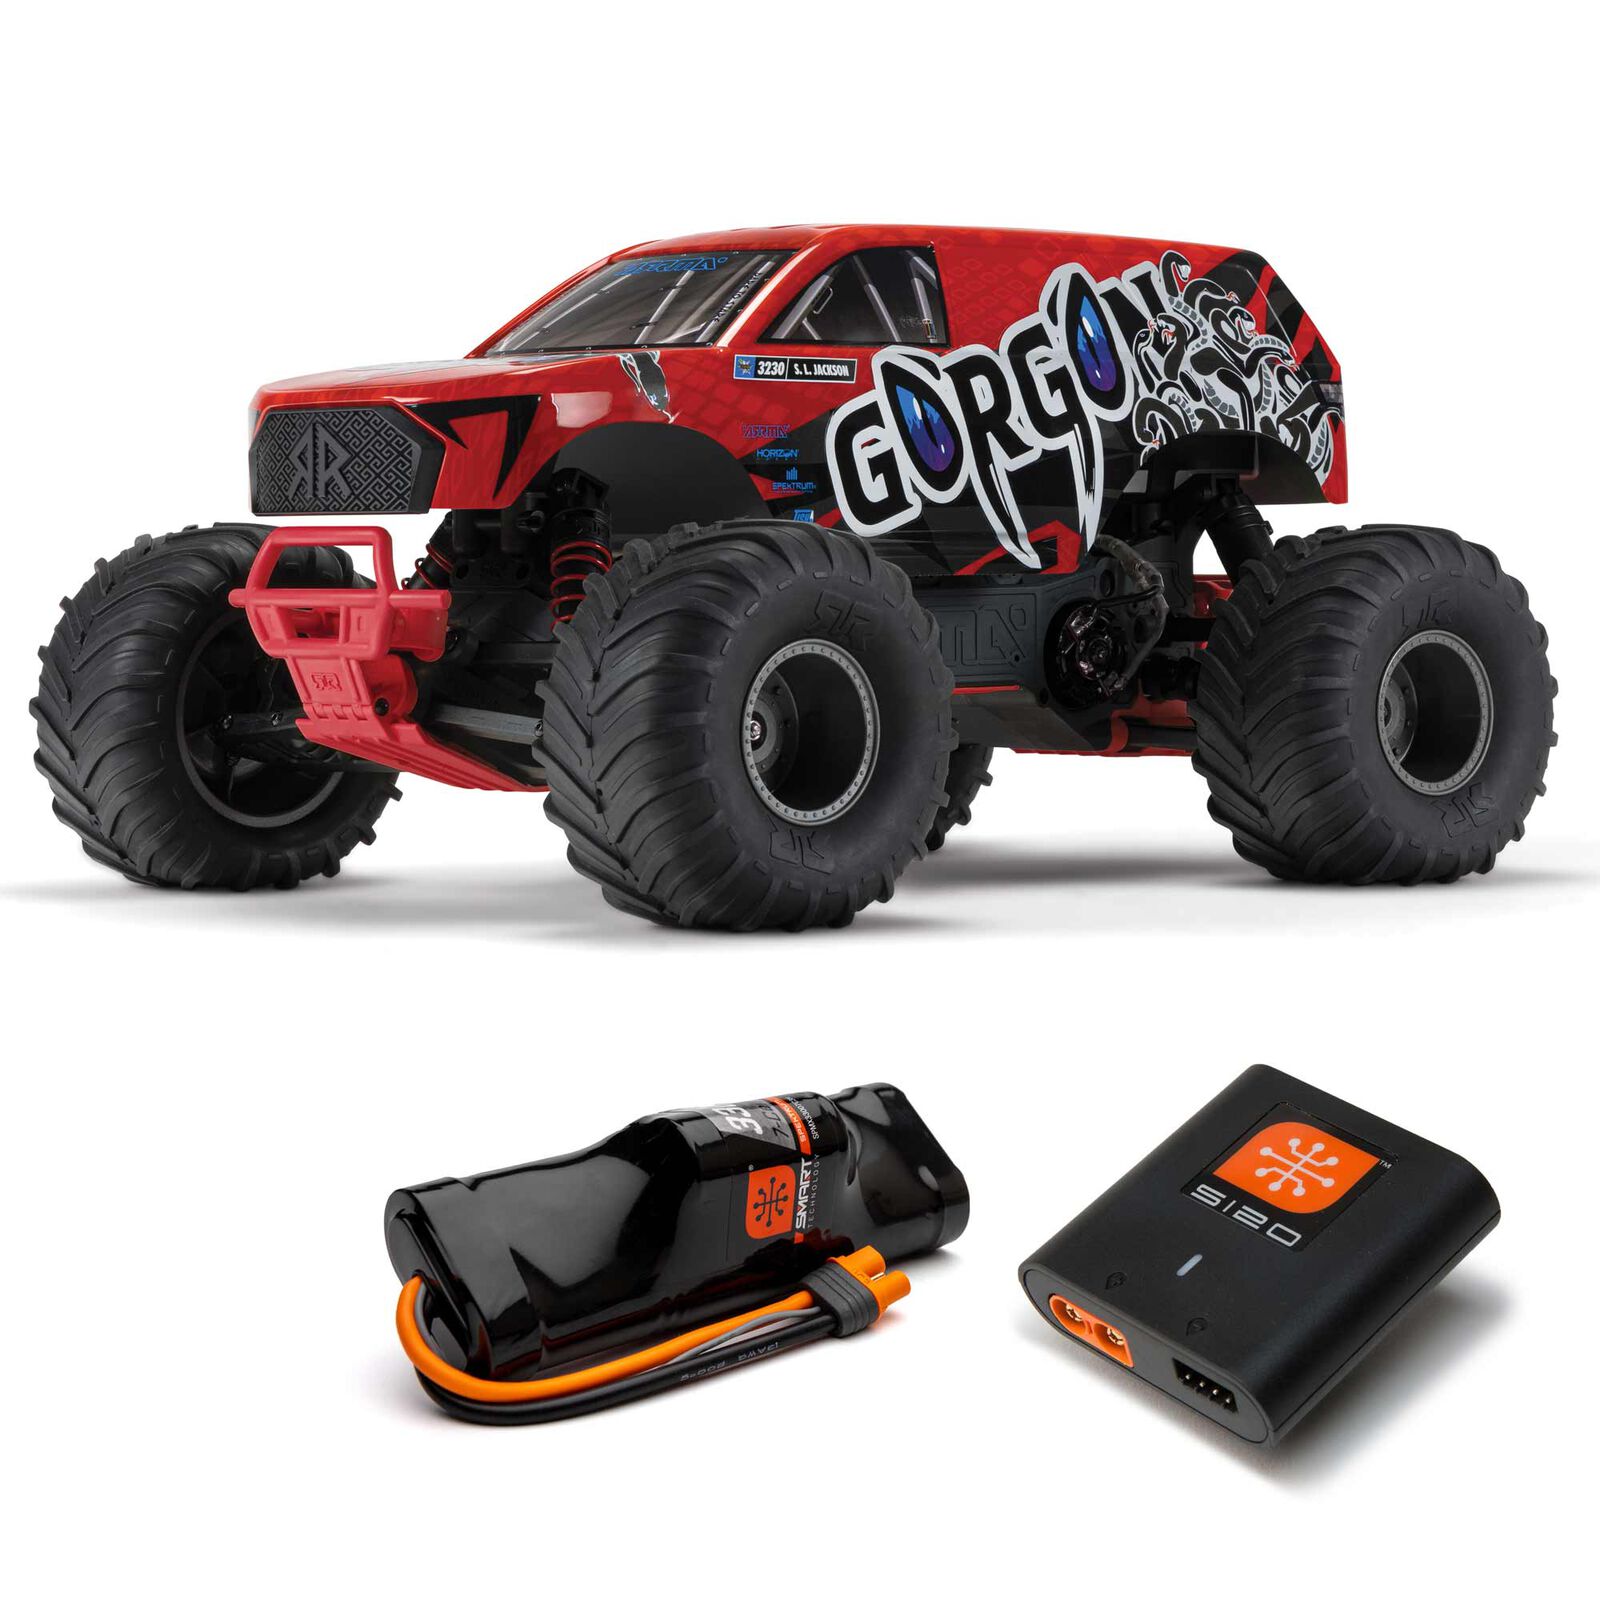 Arrma Gorgon 1/10 Mega Escocbillas 2WD RTR Monster Rojo (Bateria Y Cargador)